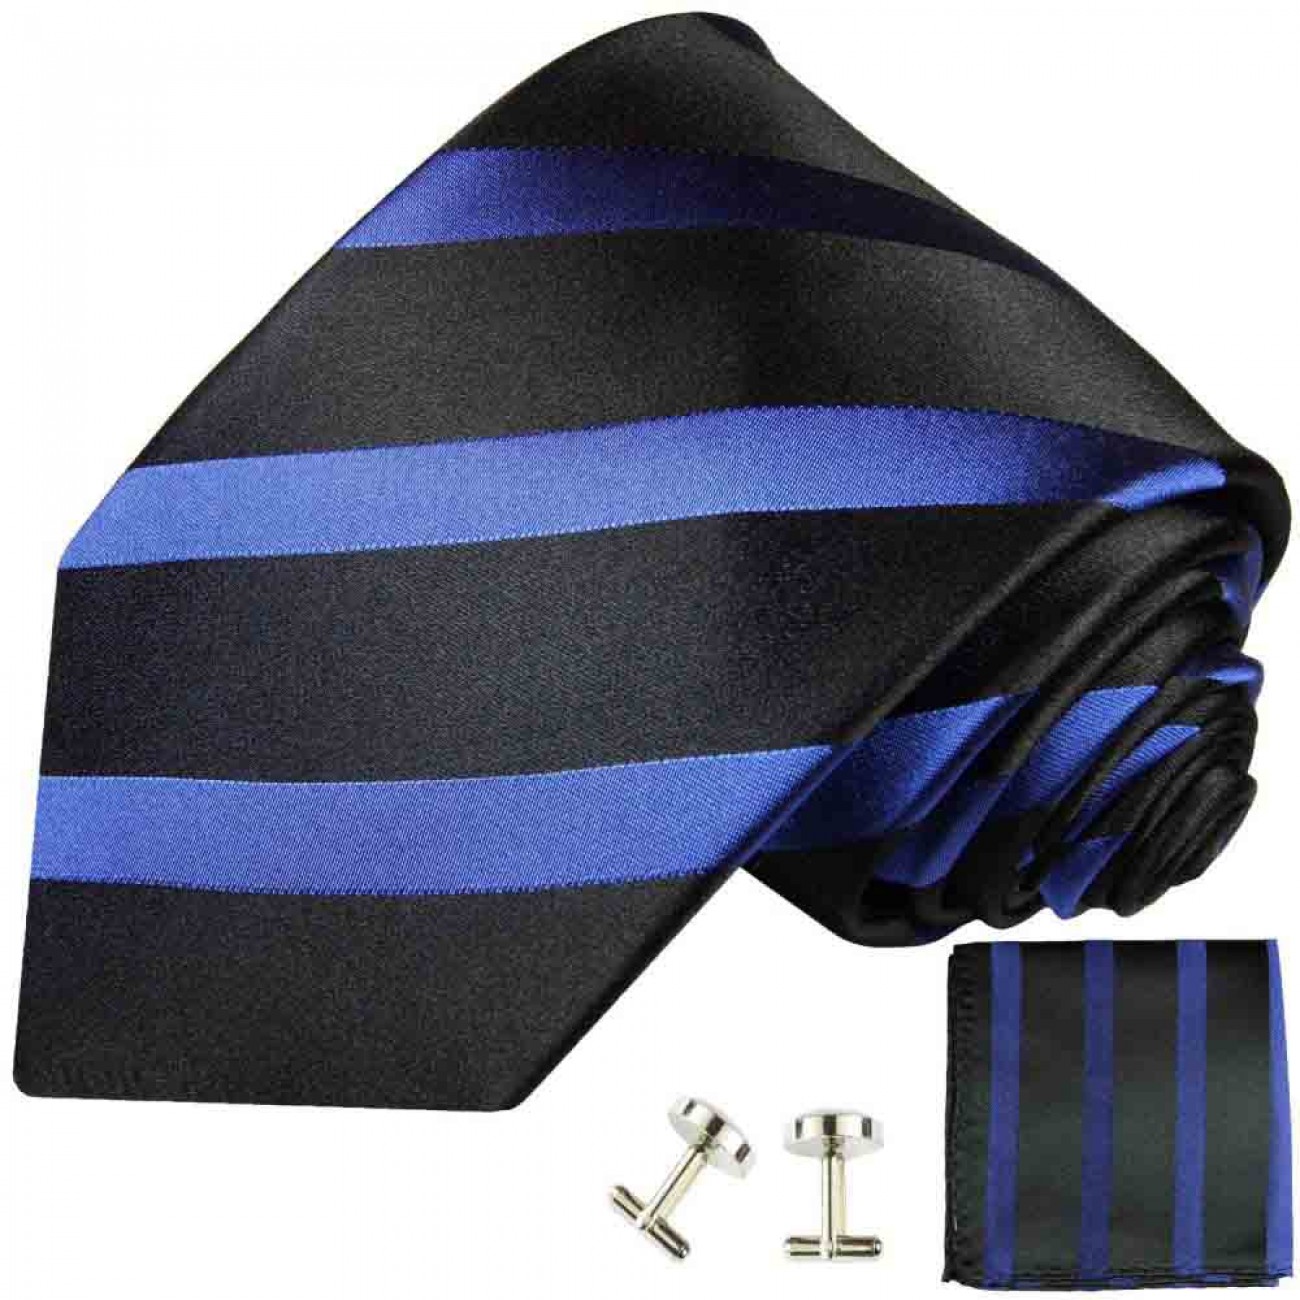 Blue black mens tie striped necktie - silk tie and pocket square and cufflinks